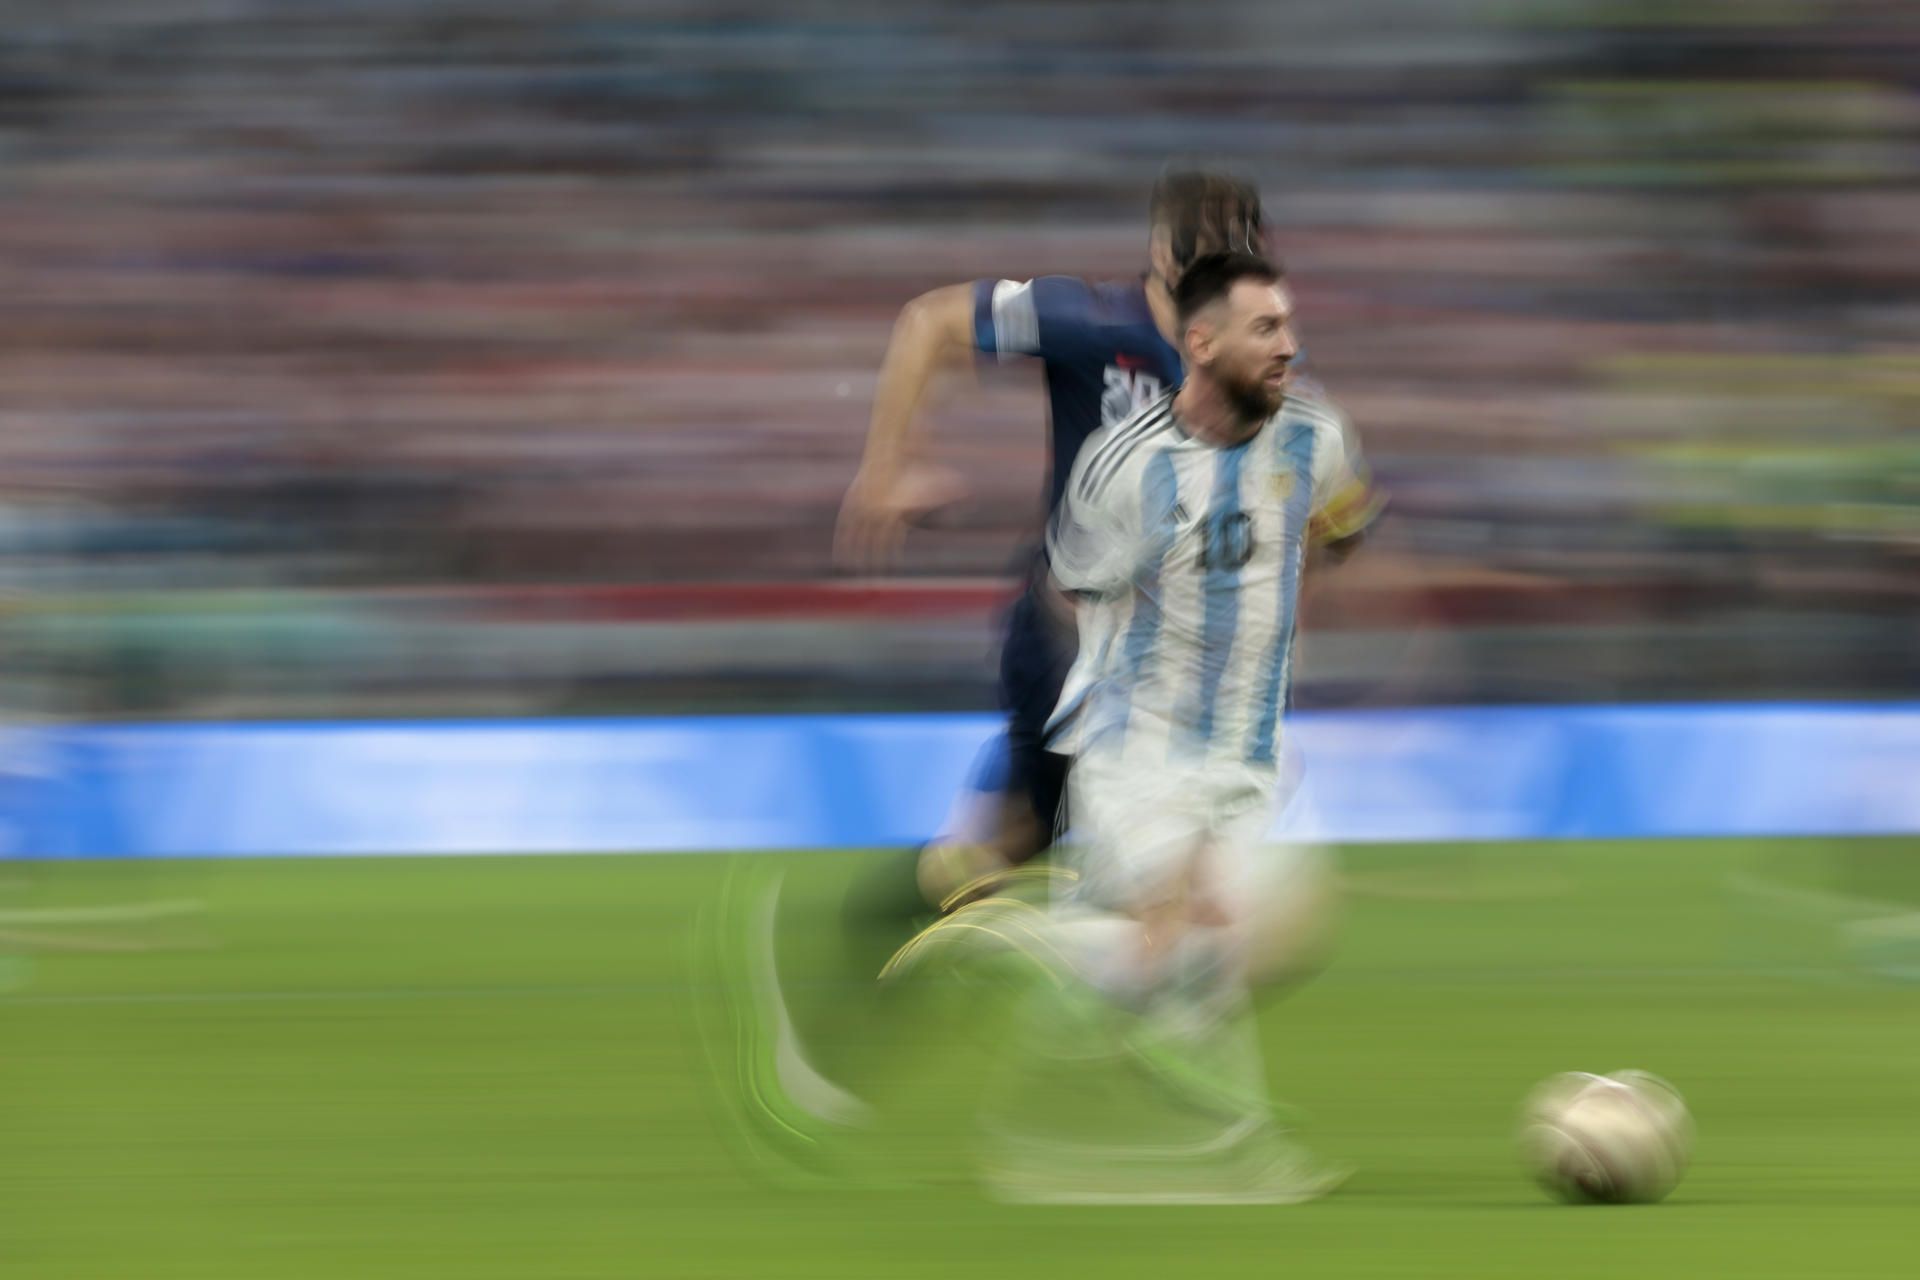 Leo Messi, en la semifinal de Argentina contra Croacia del Mundial de Fútbol de Qatar 2022. EFE/JUAN IGNACIO RONCORONI